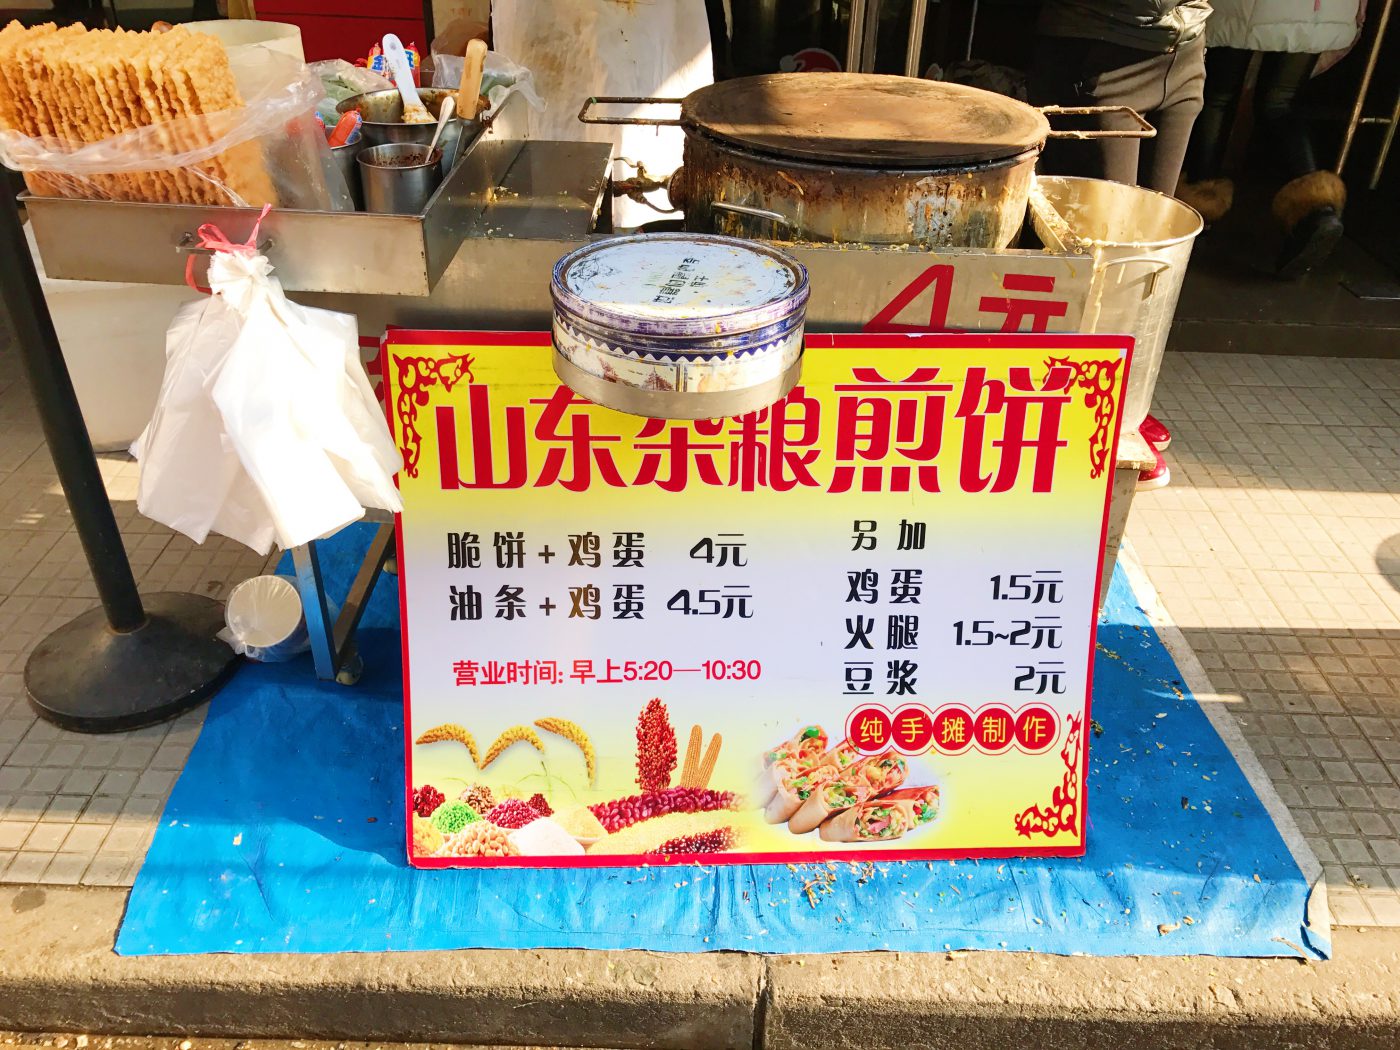 Jianbing menu and prices